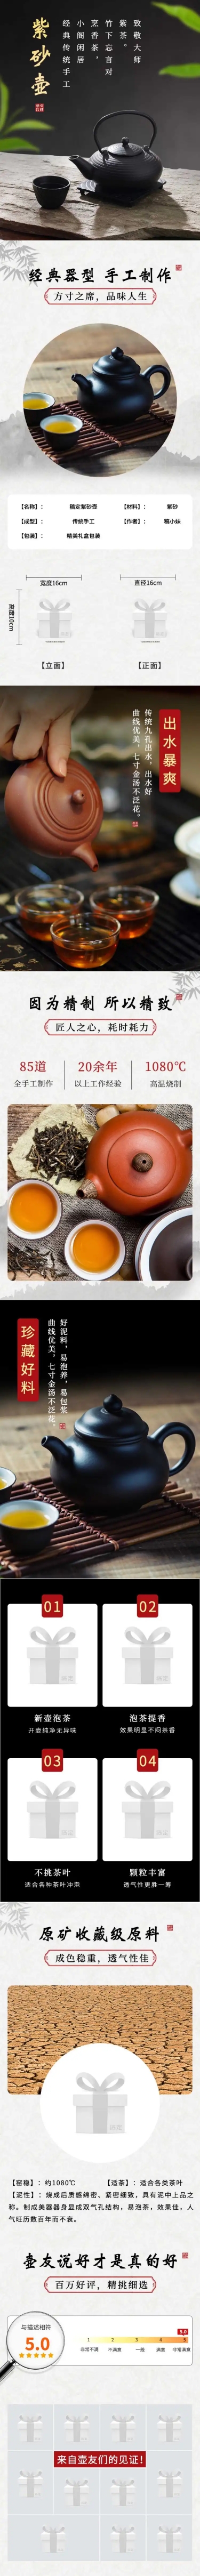 清新中国风百货茶具详情页预览效果